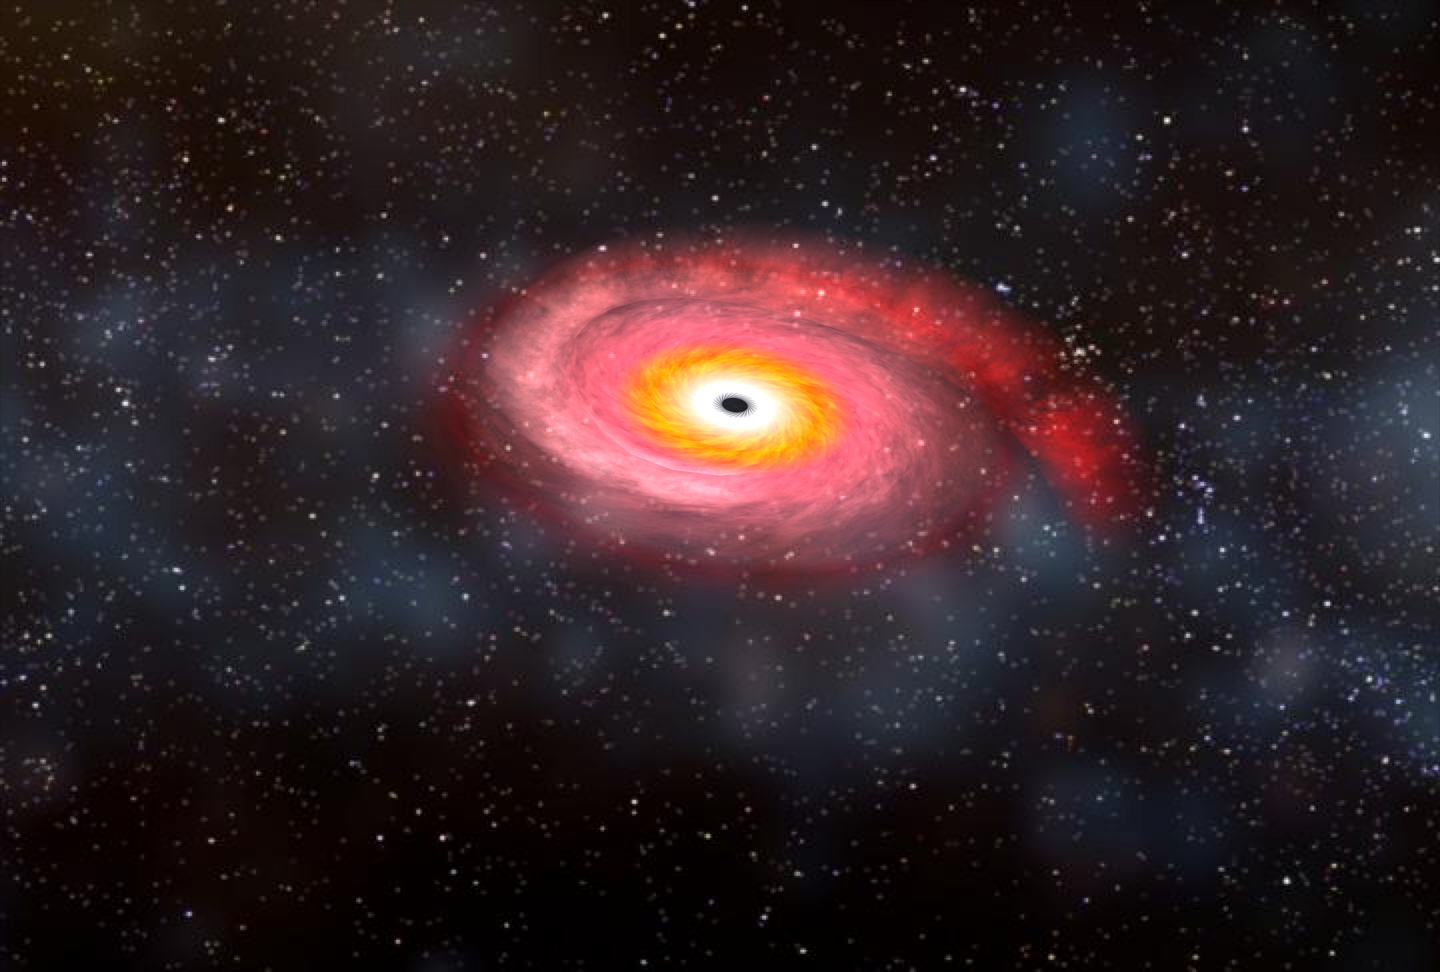 أقرب صورة على الإطلاق: أحد الثقوب السوداء الهائلة يبتلع نجمًا في الفضاء